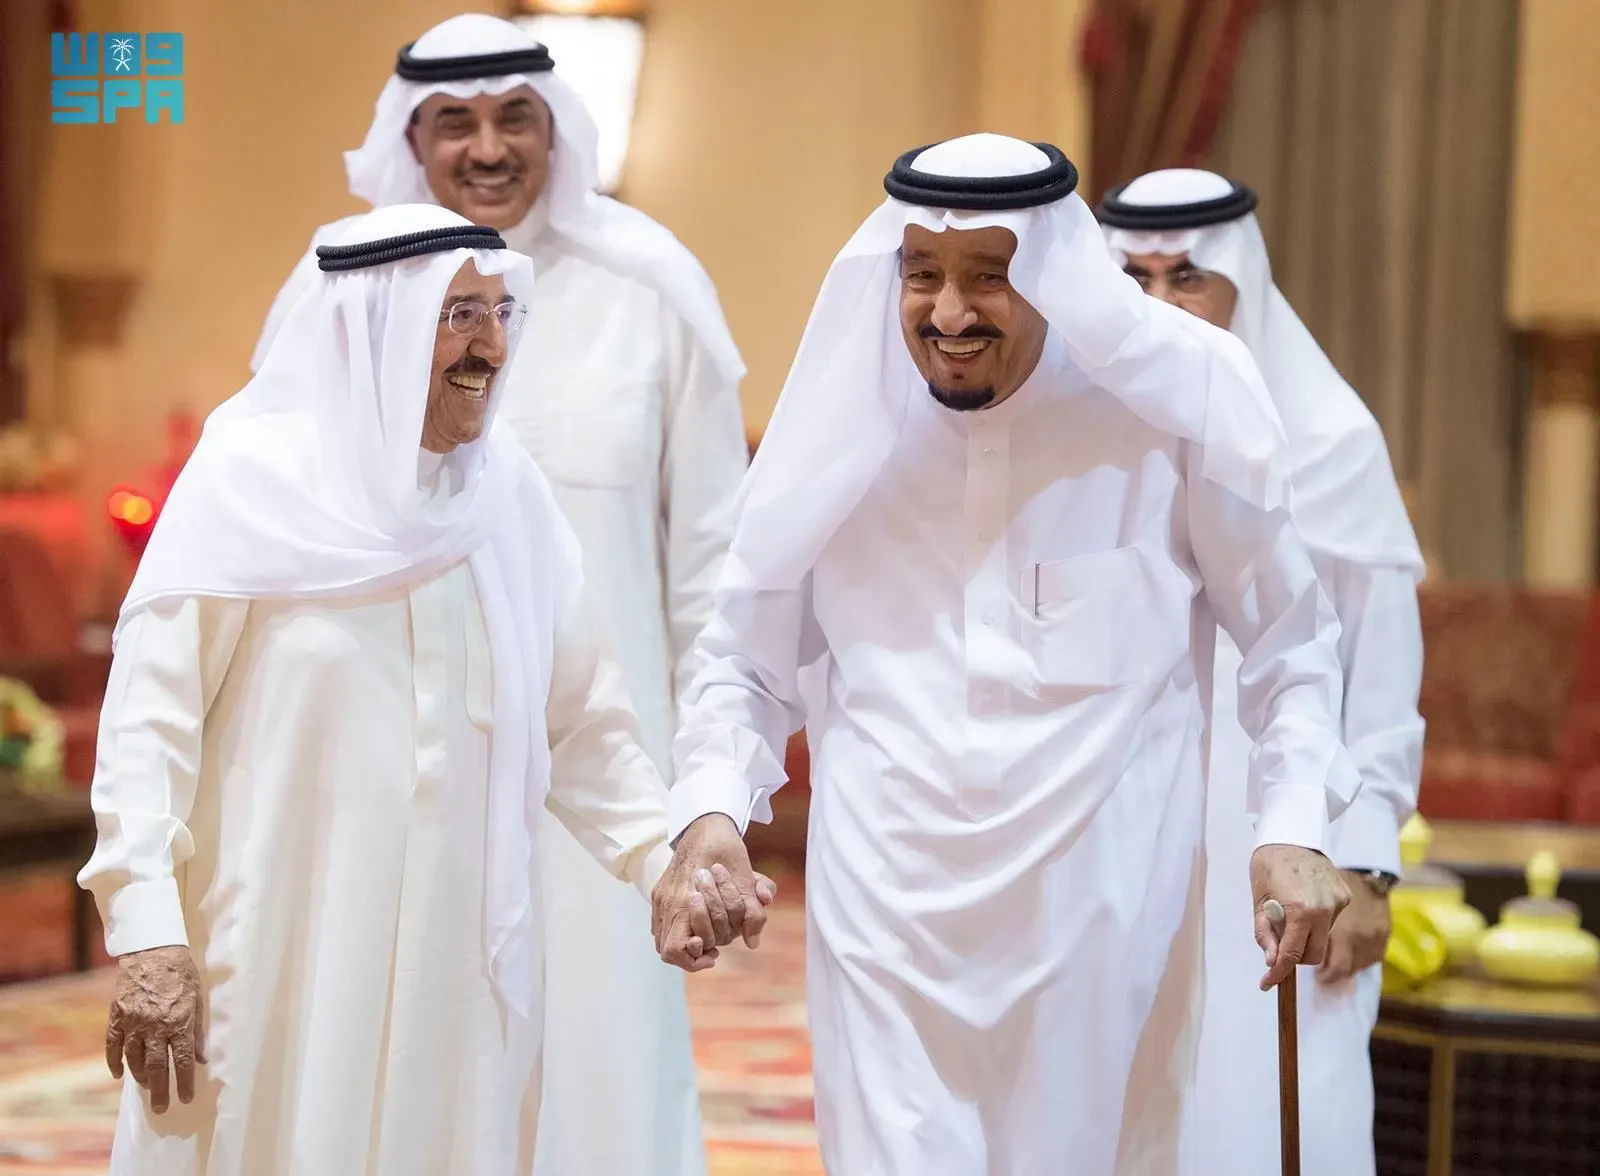 الكويت.. 63 عاماً من مسيرة بناء دولة حديثة ترسم ملامحها رؤية "كويت 2035"